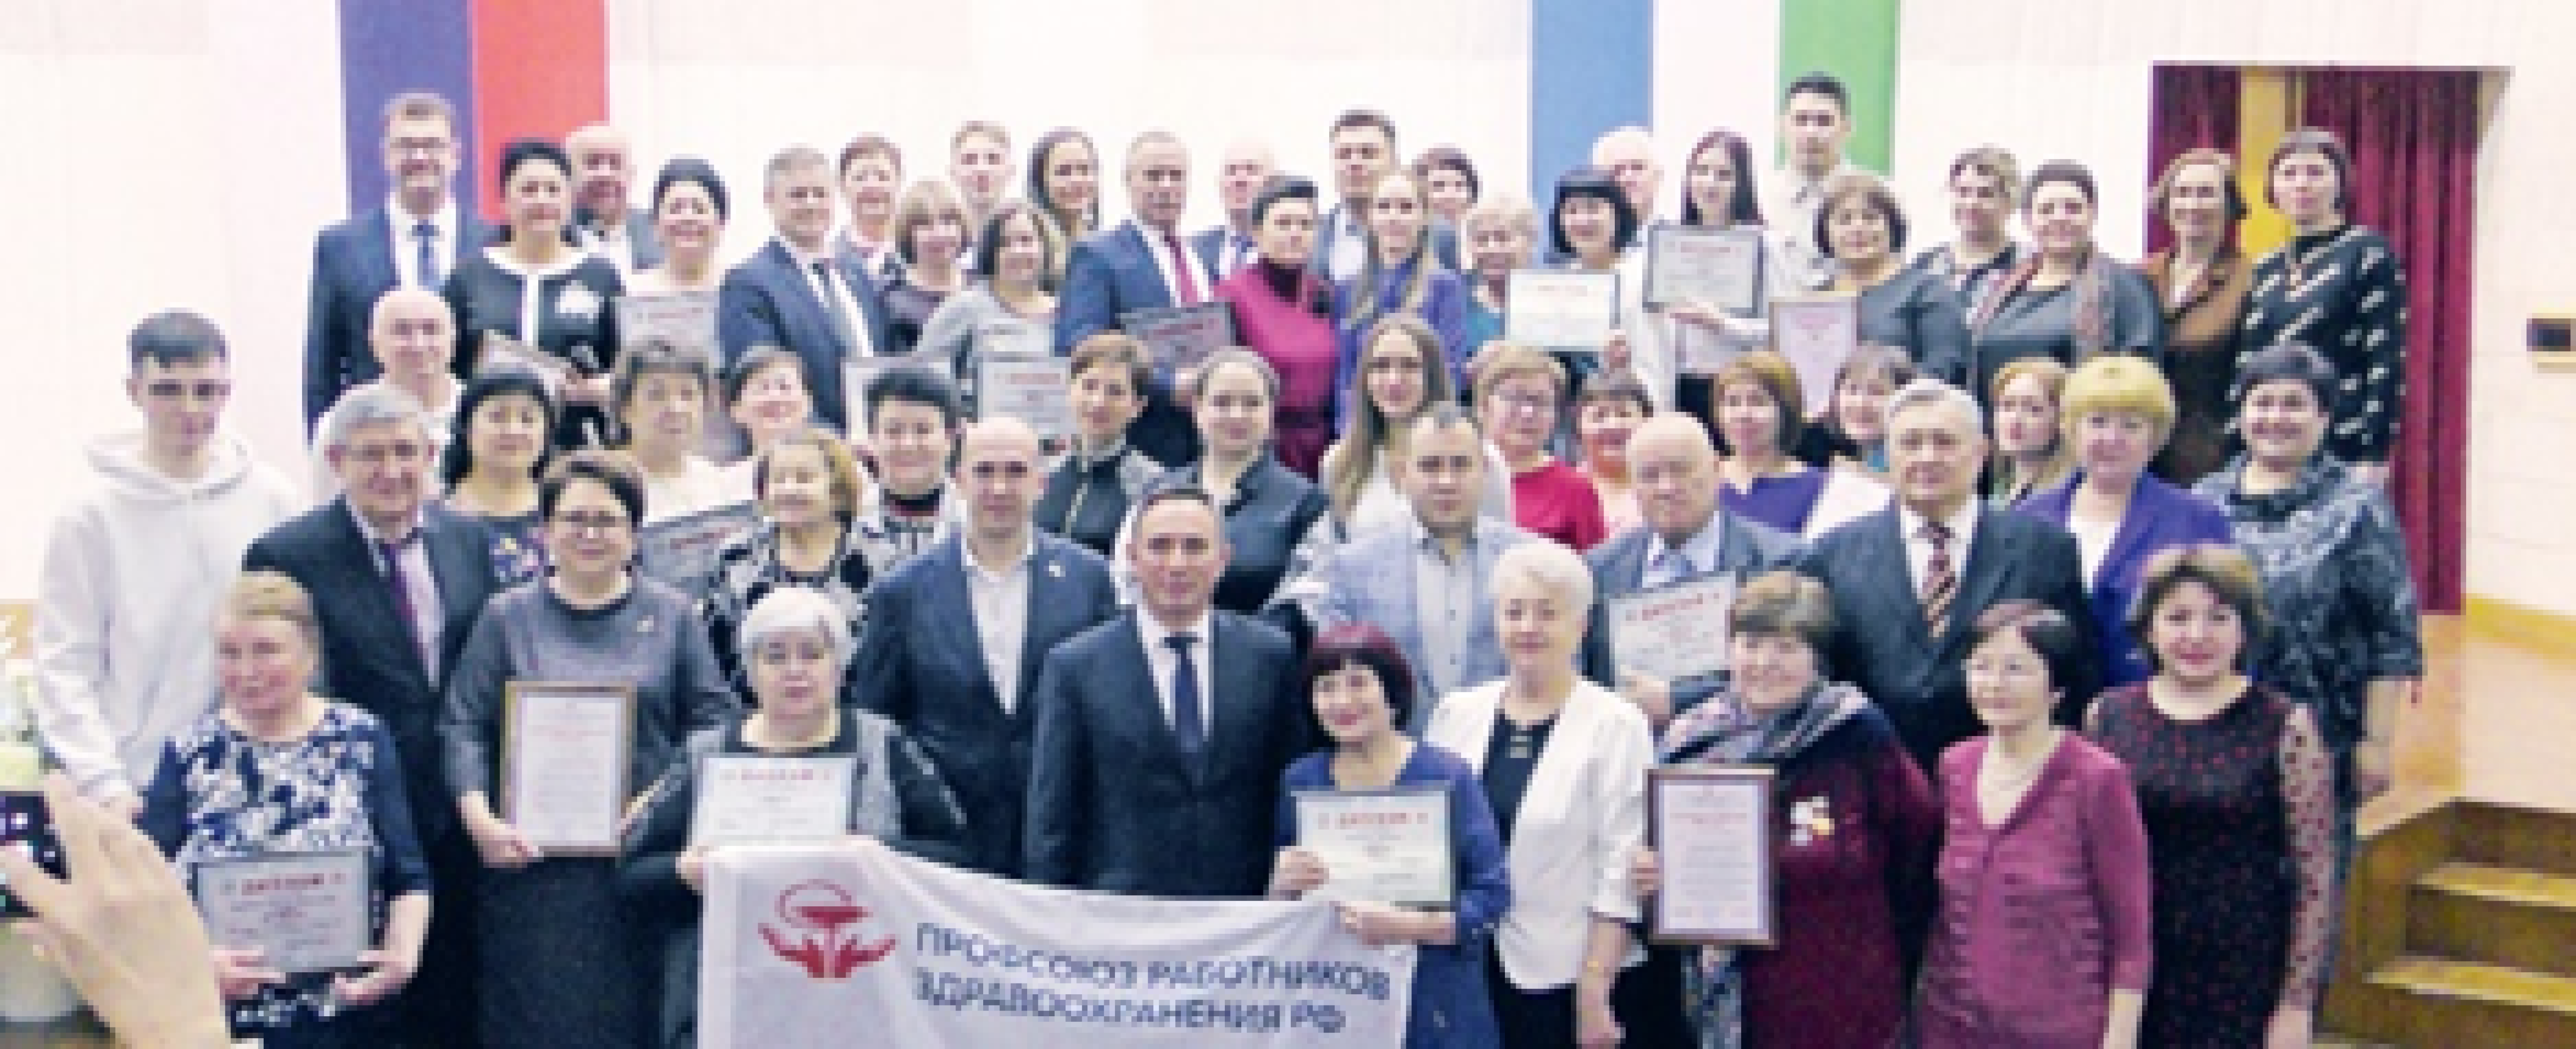 Работники здравоохранения Деловой мир Башкортостана